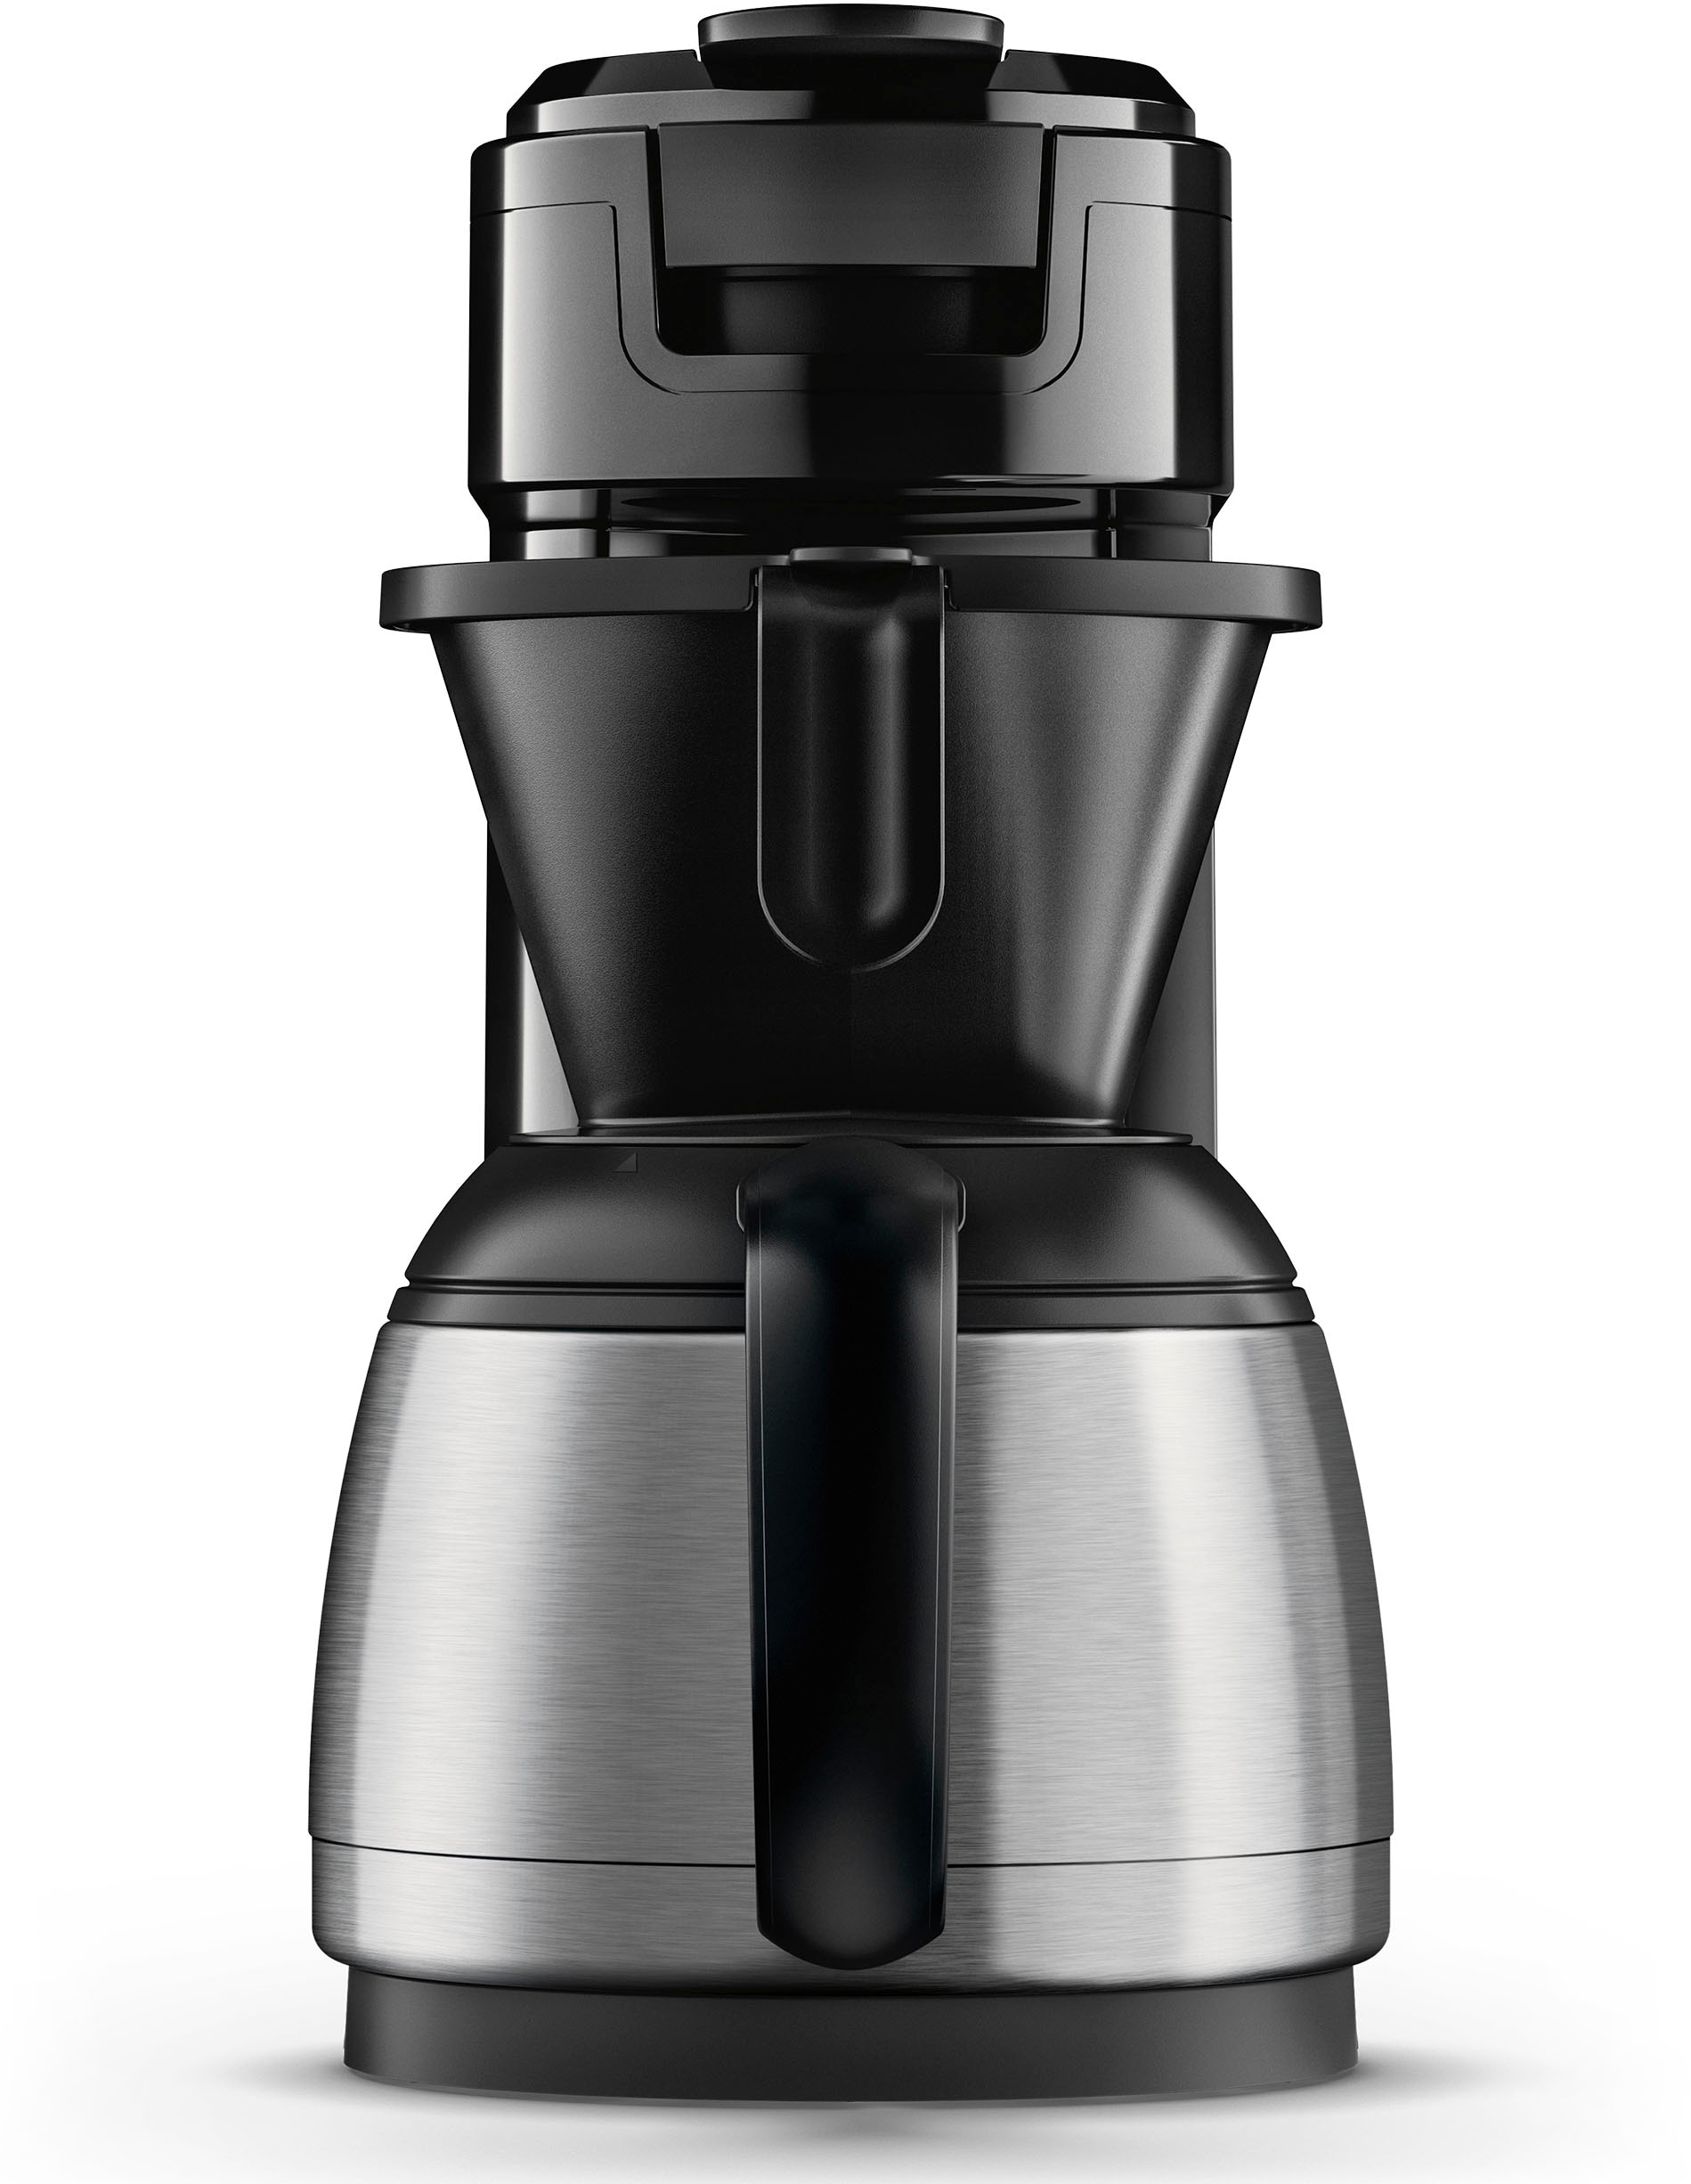 Technologie«, online »Switch Philips Boost Crema Kaffee Plastik, 1 Plus, 26% recyceltem HD6592/64, Kaffeepaddose Wert Kaffeekanne, l bestellen Senseo €9,90 UVP inkl. Kaffeepadmaschine